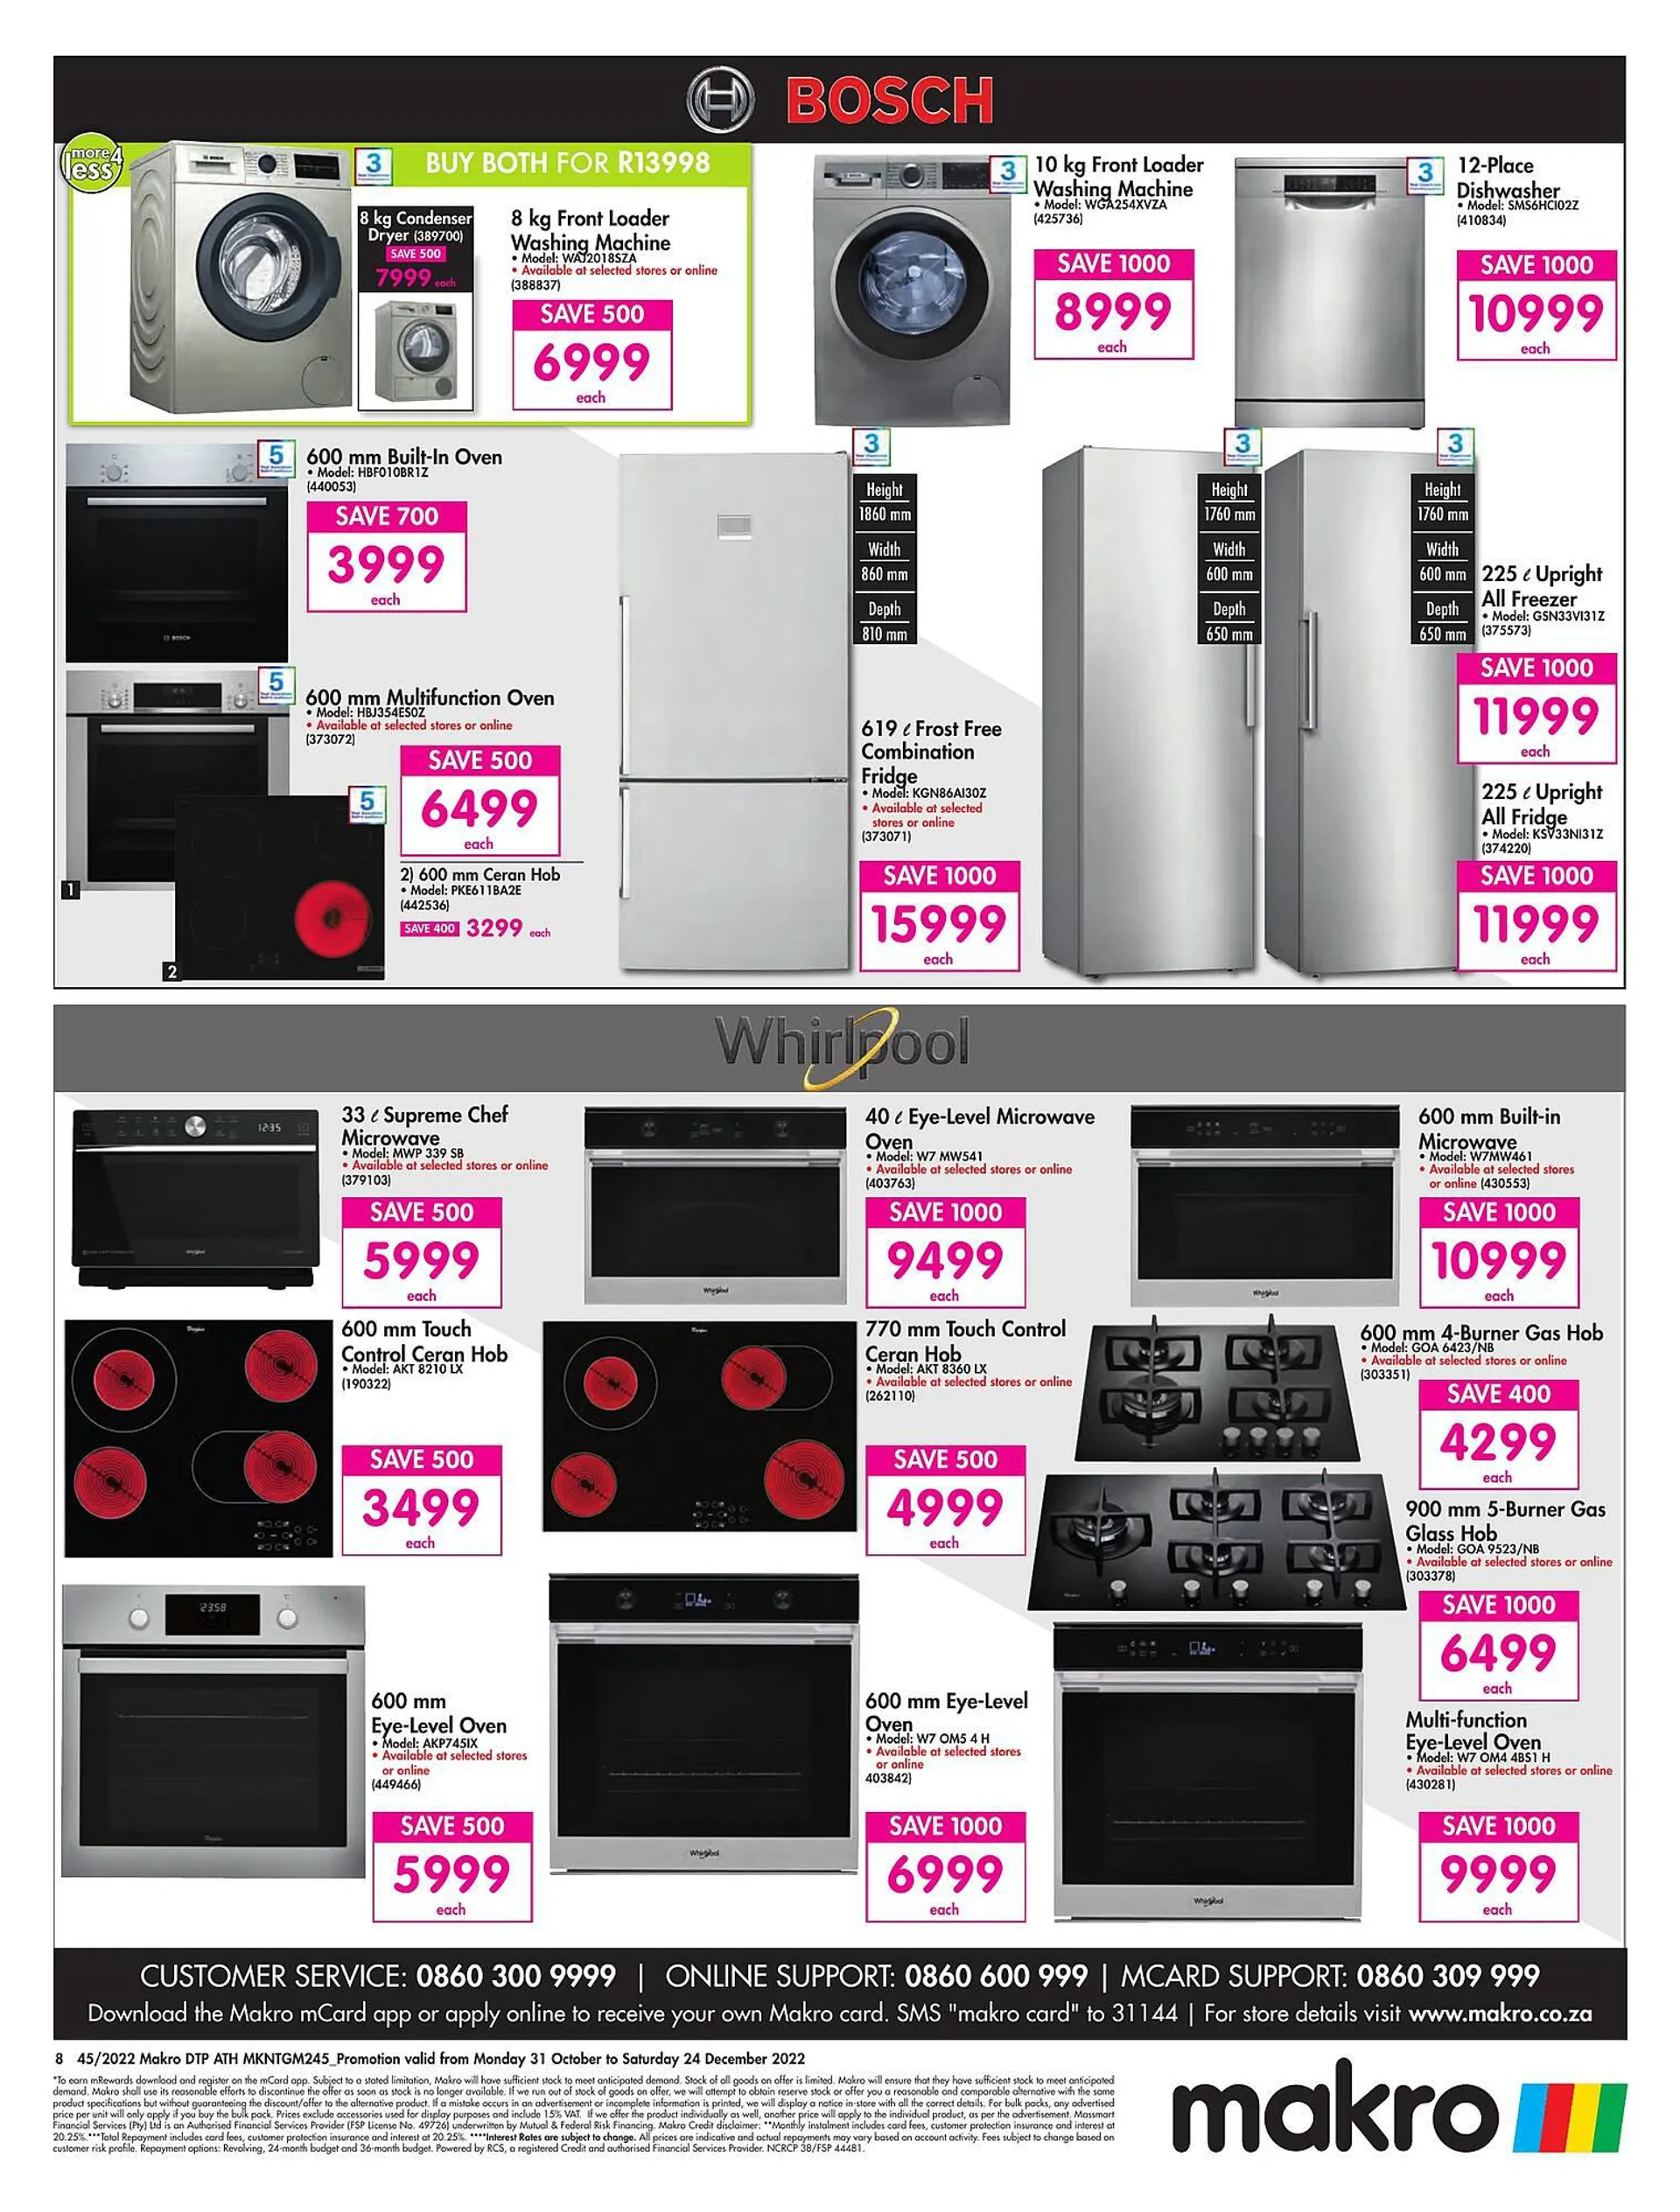 Makro catalogue - Appliances - 8